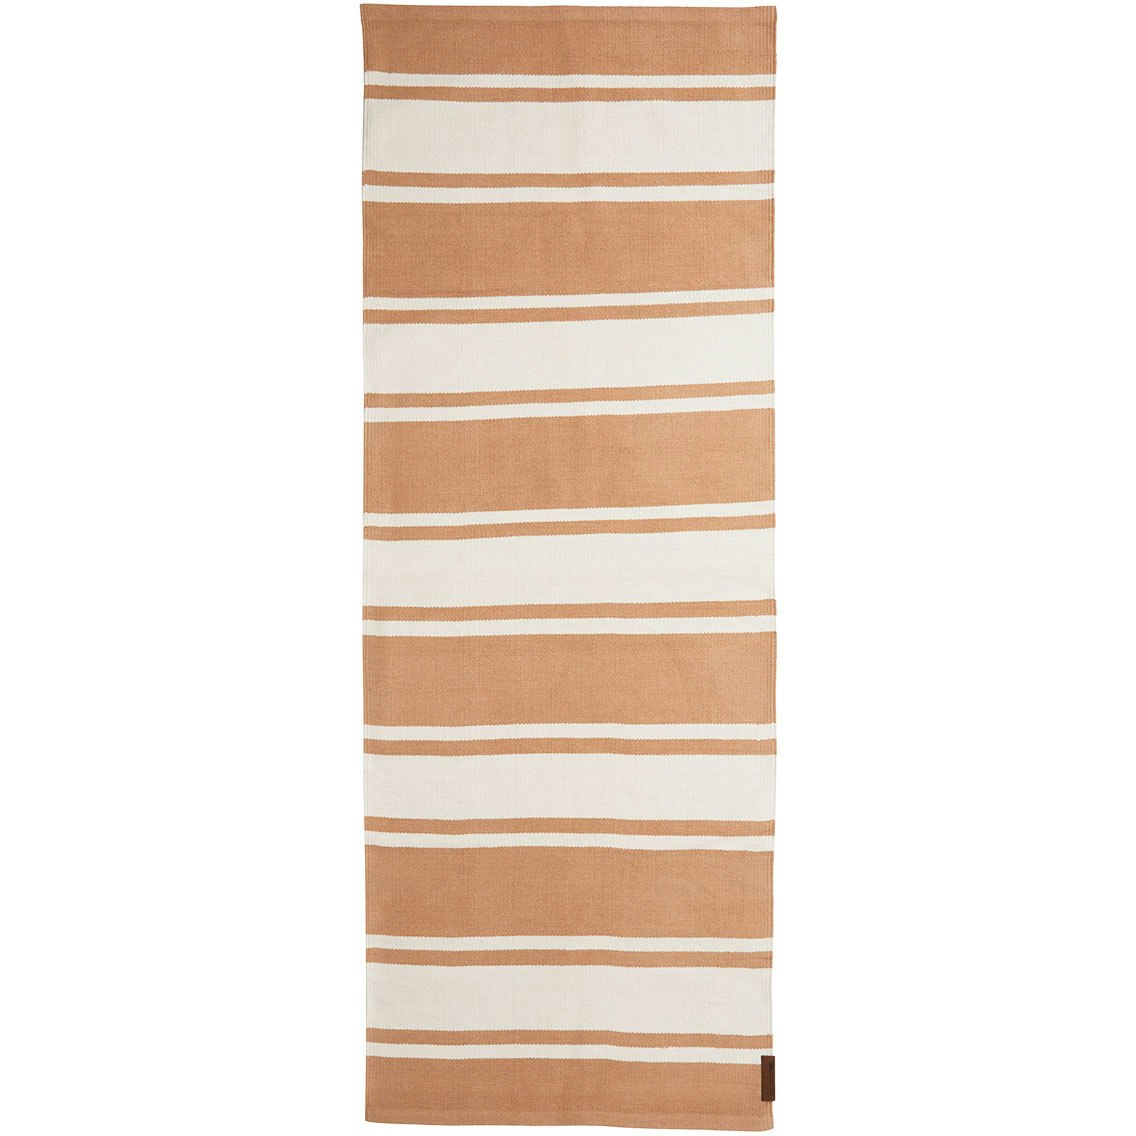 Organic Striped Cotton Matto 80x220 cm, Beige